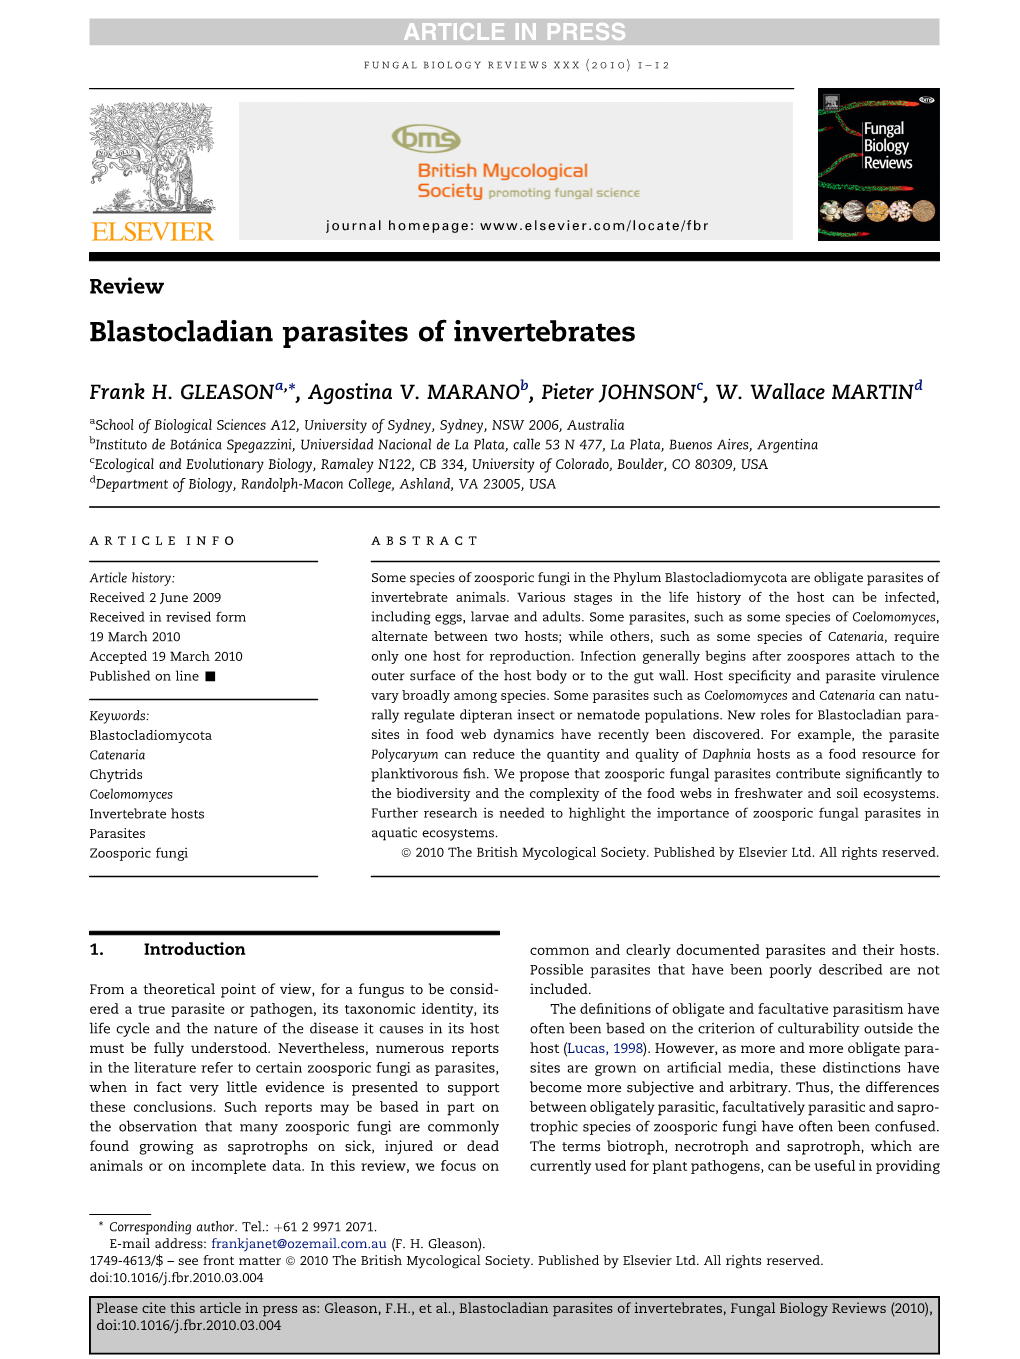 Blastocladian Parasites of Invertebrates